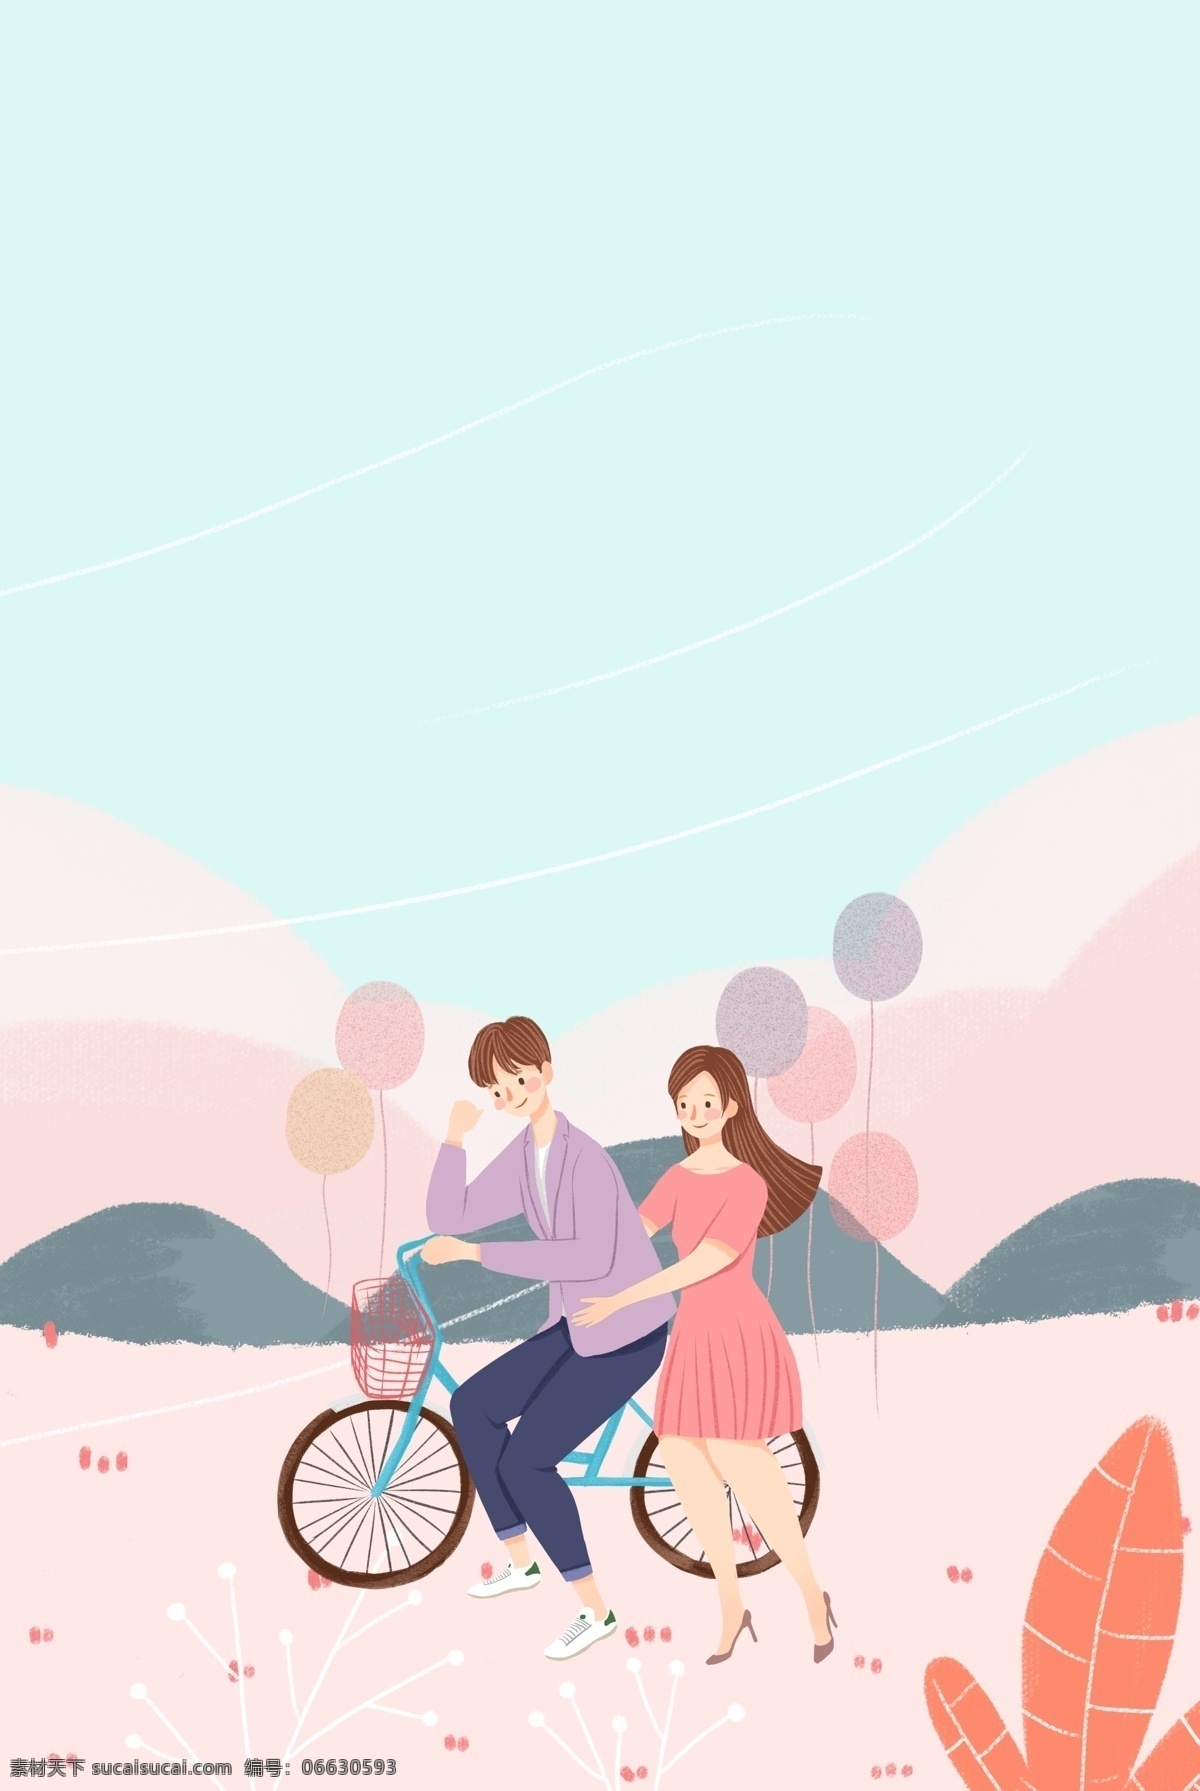 情人节 骑 单车 旅行 梦幻 插画 海报 情侣 约会 浪漫 爱情 自行车 插画风 促销海报